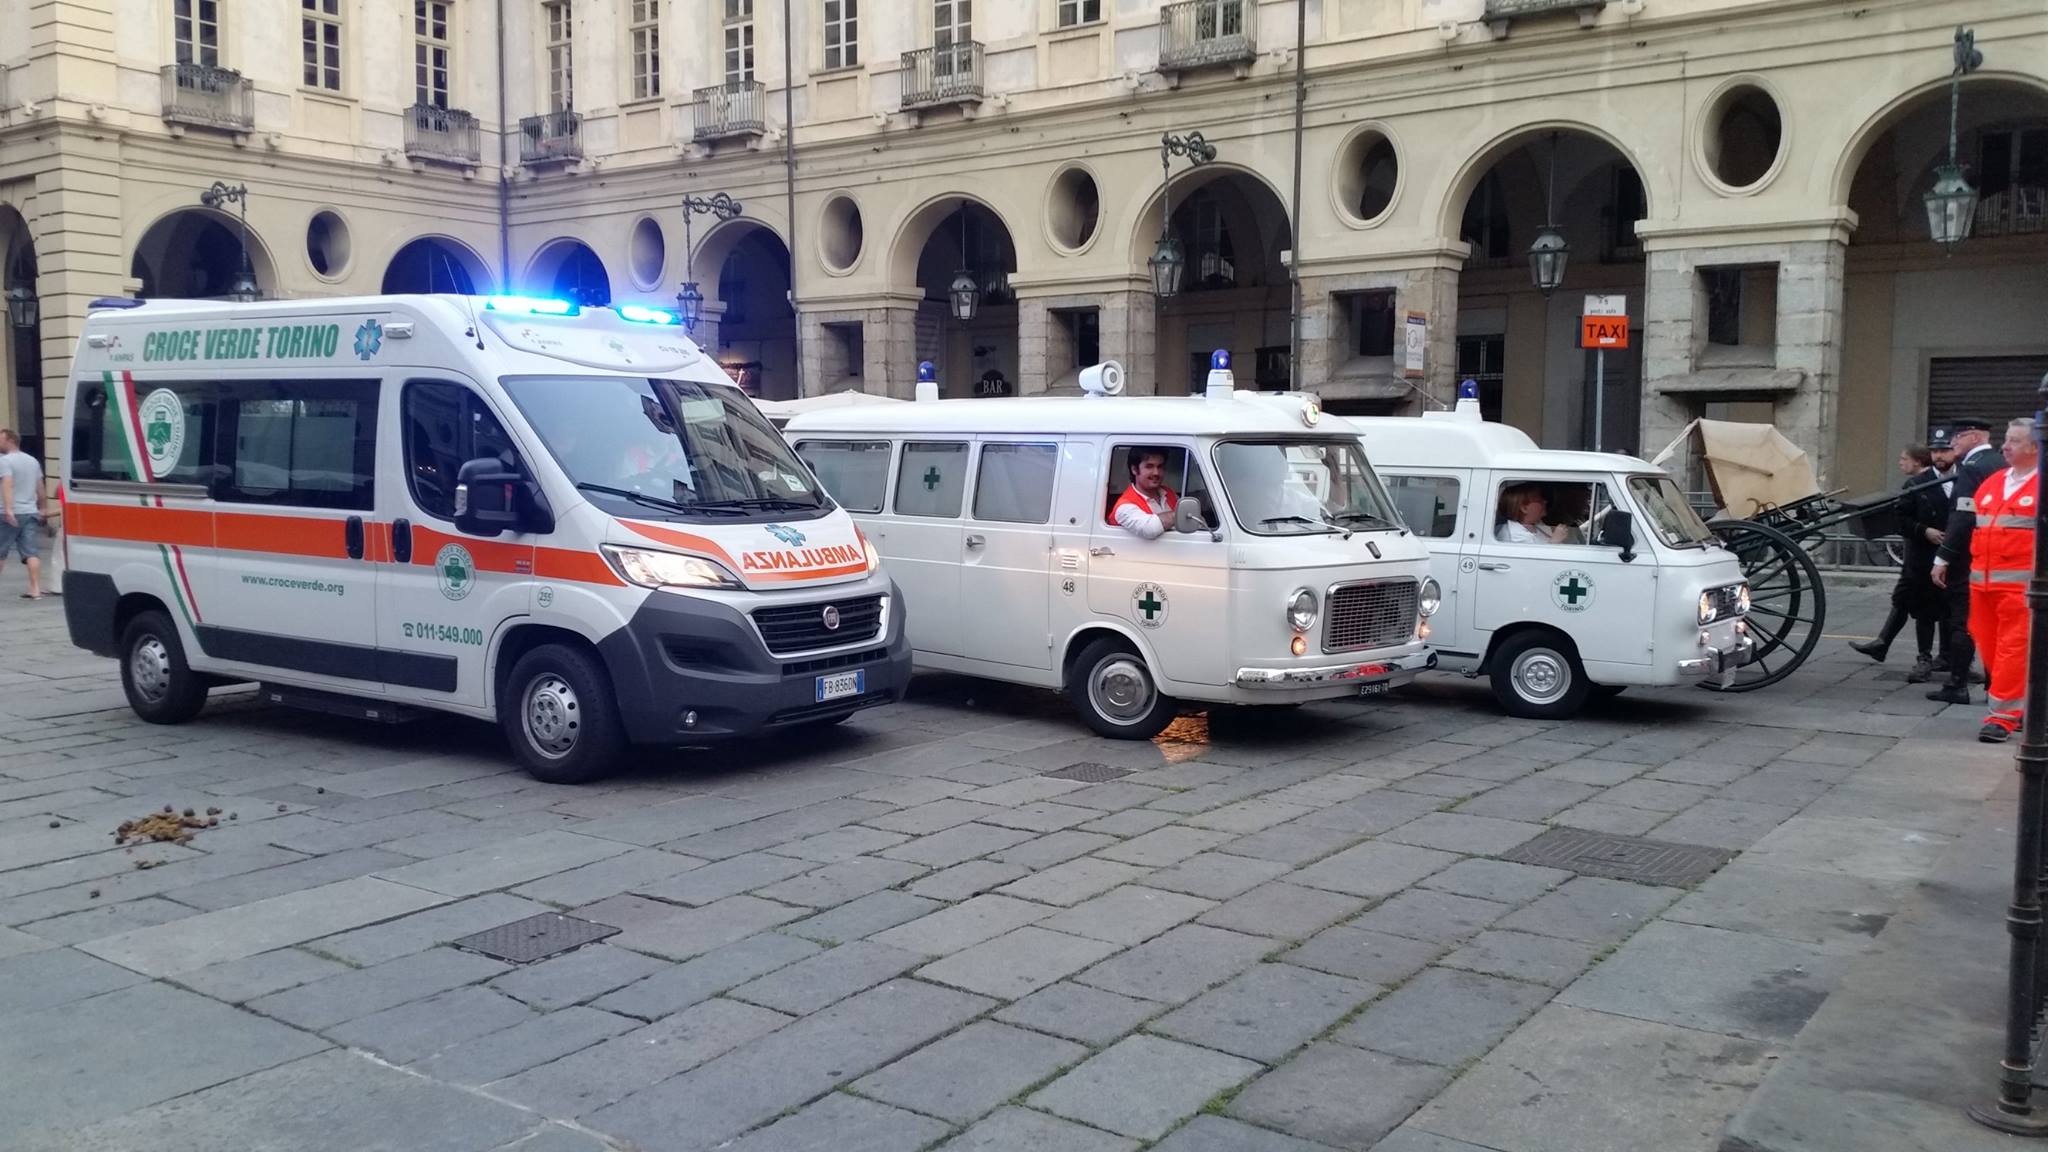 Storia delle associazioni d'Italia - La Croce Verde di Torino | Emergency Live 2